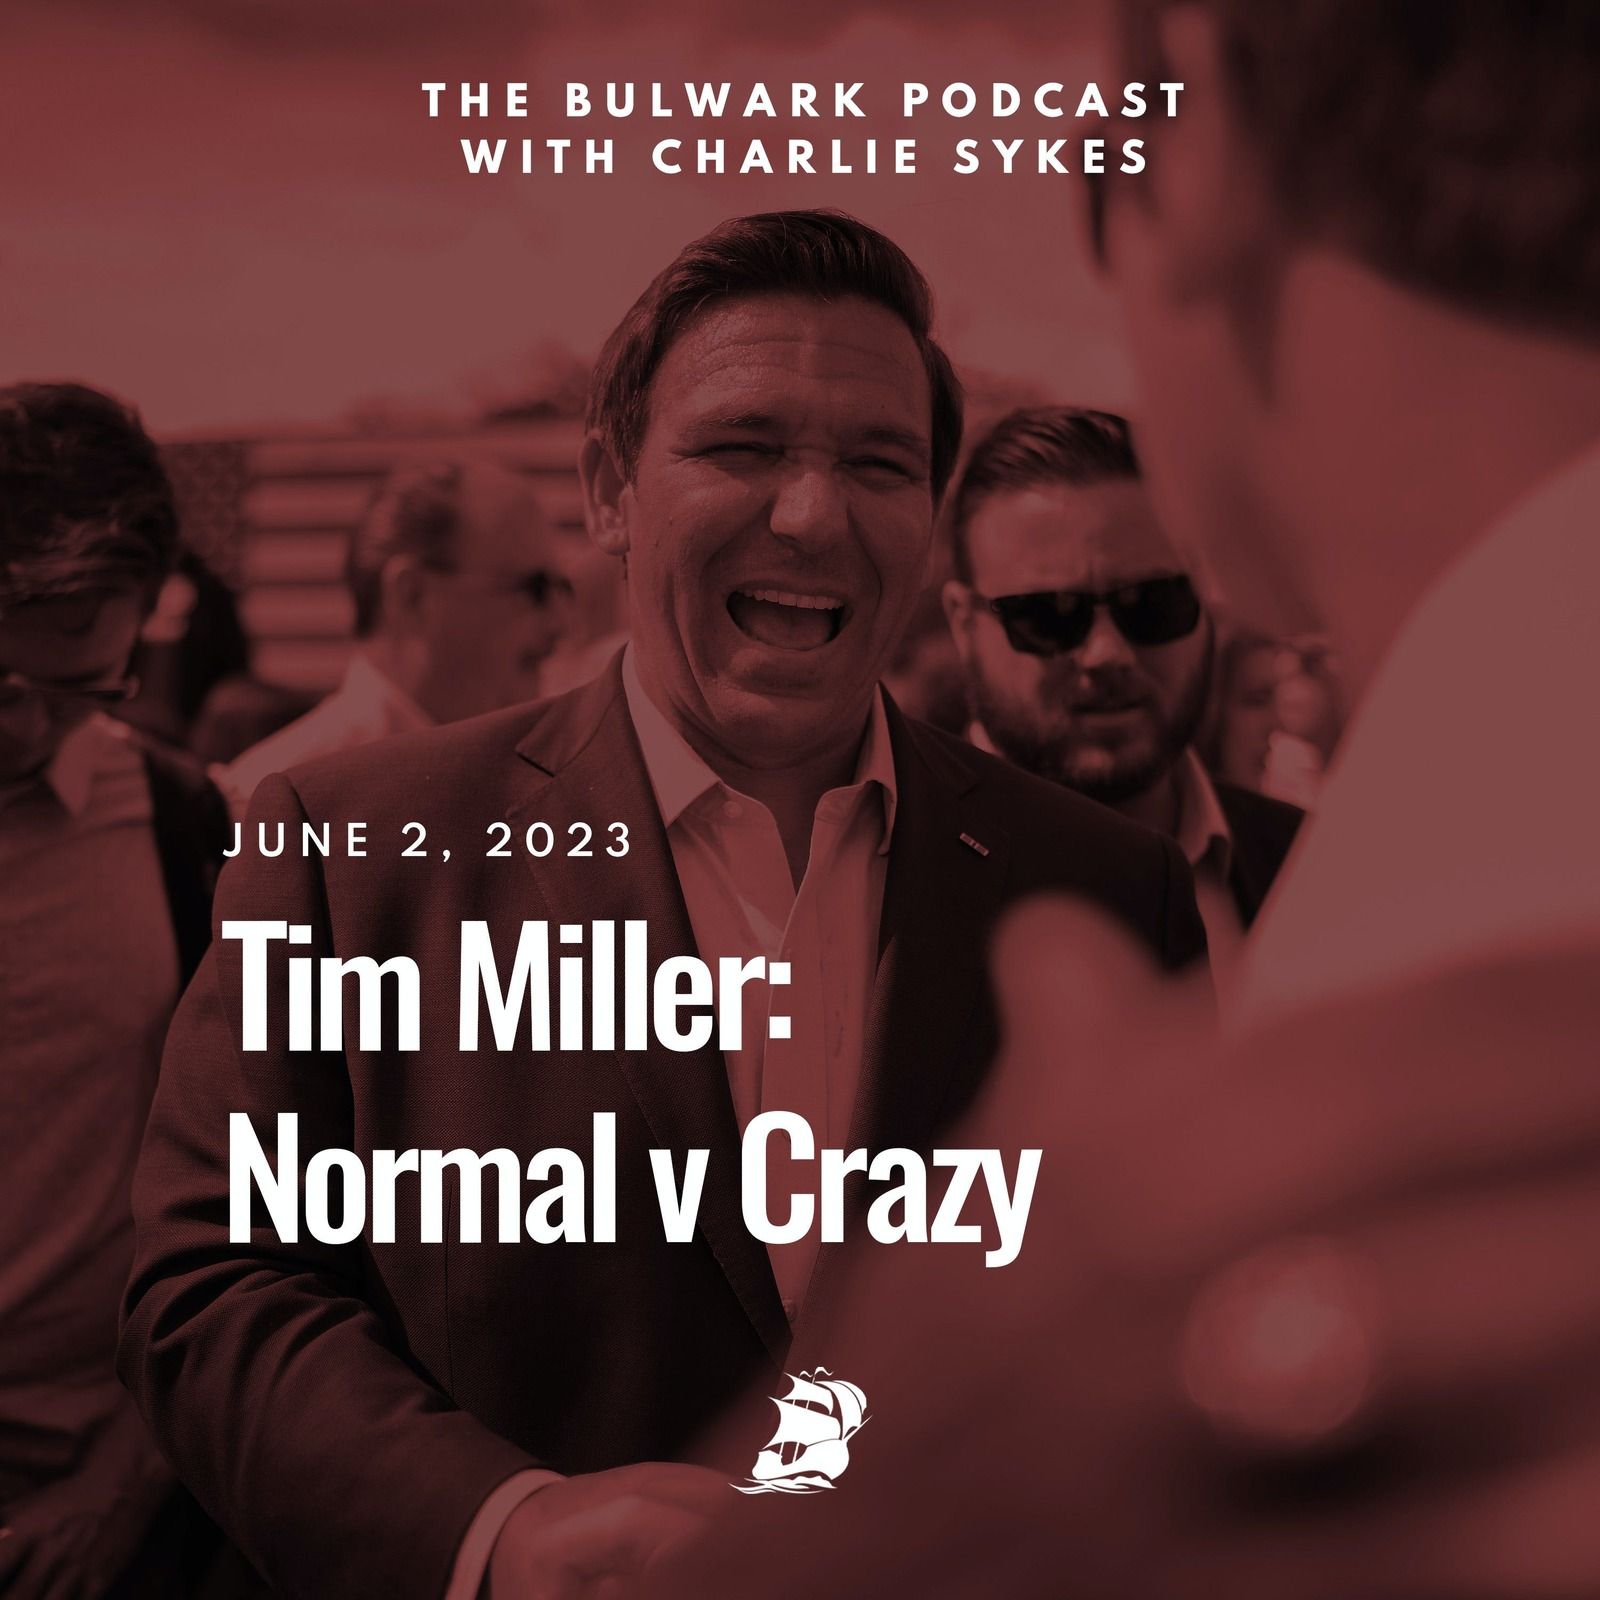 Tim Miller: Normal v Crazy by The Bulwark Podcast